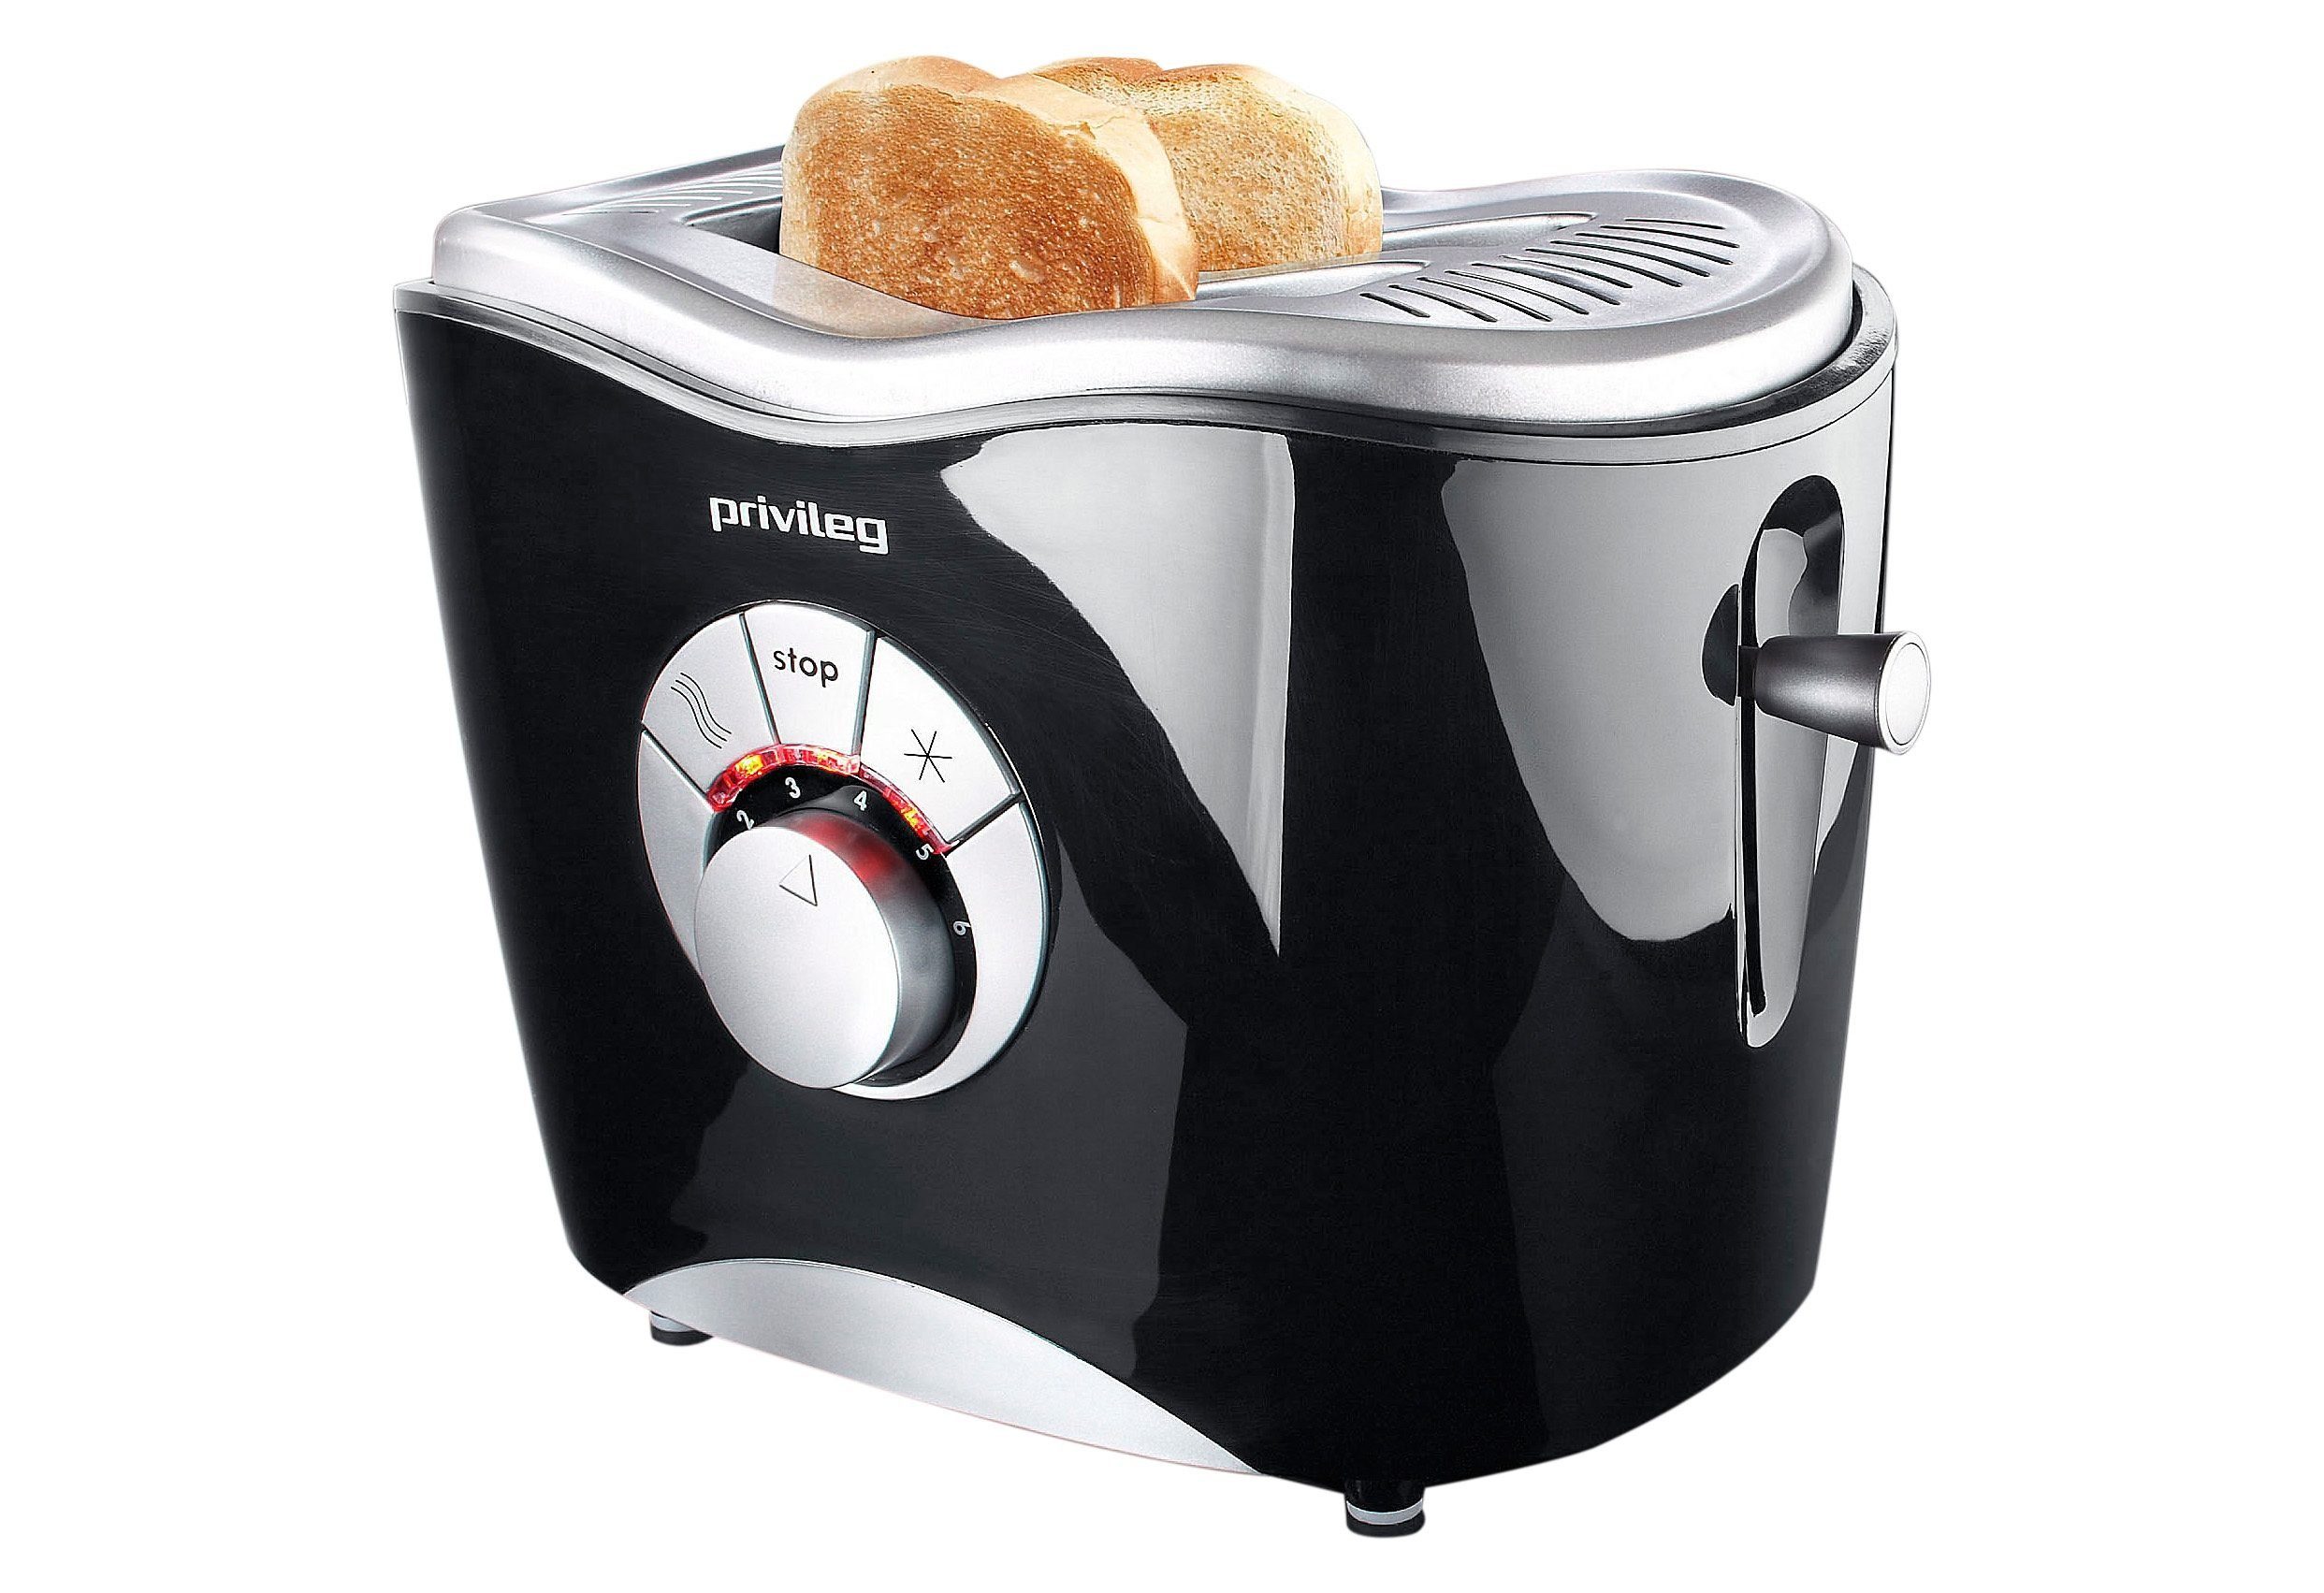 Privileg Toaster für Scheiben, 860 schwarz 2 Schlitze, 2 W, kurze 568811